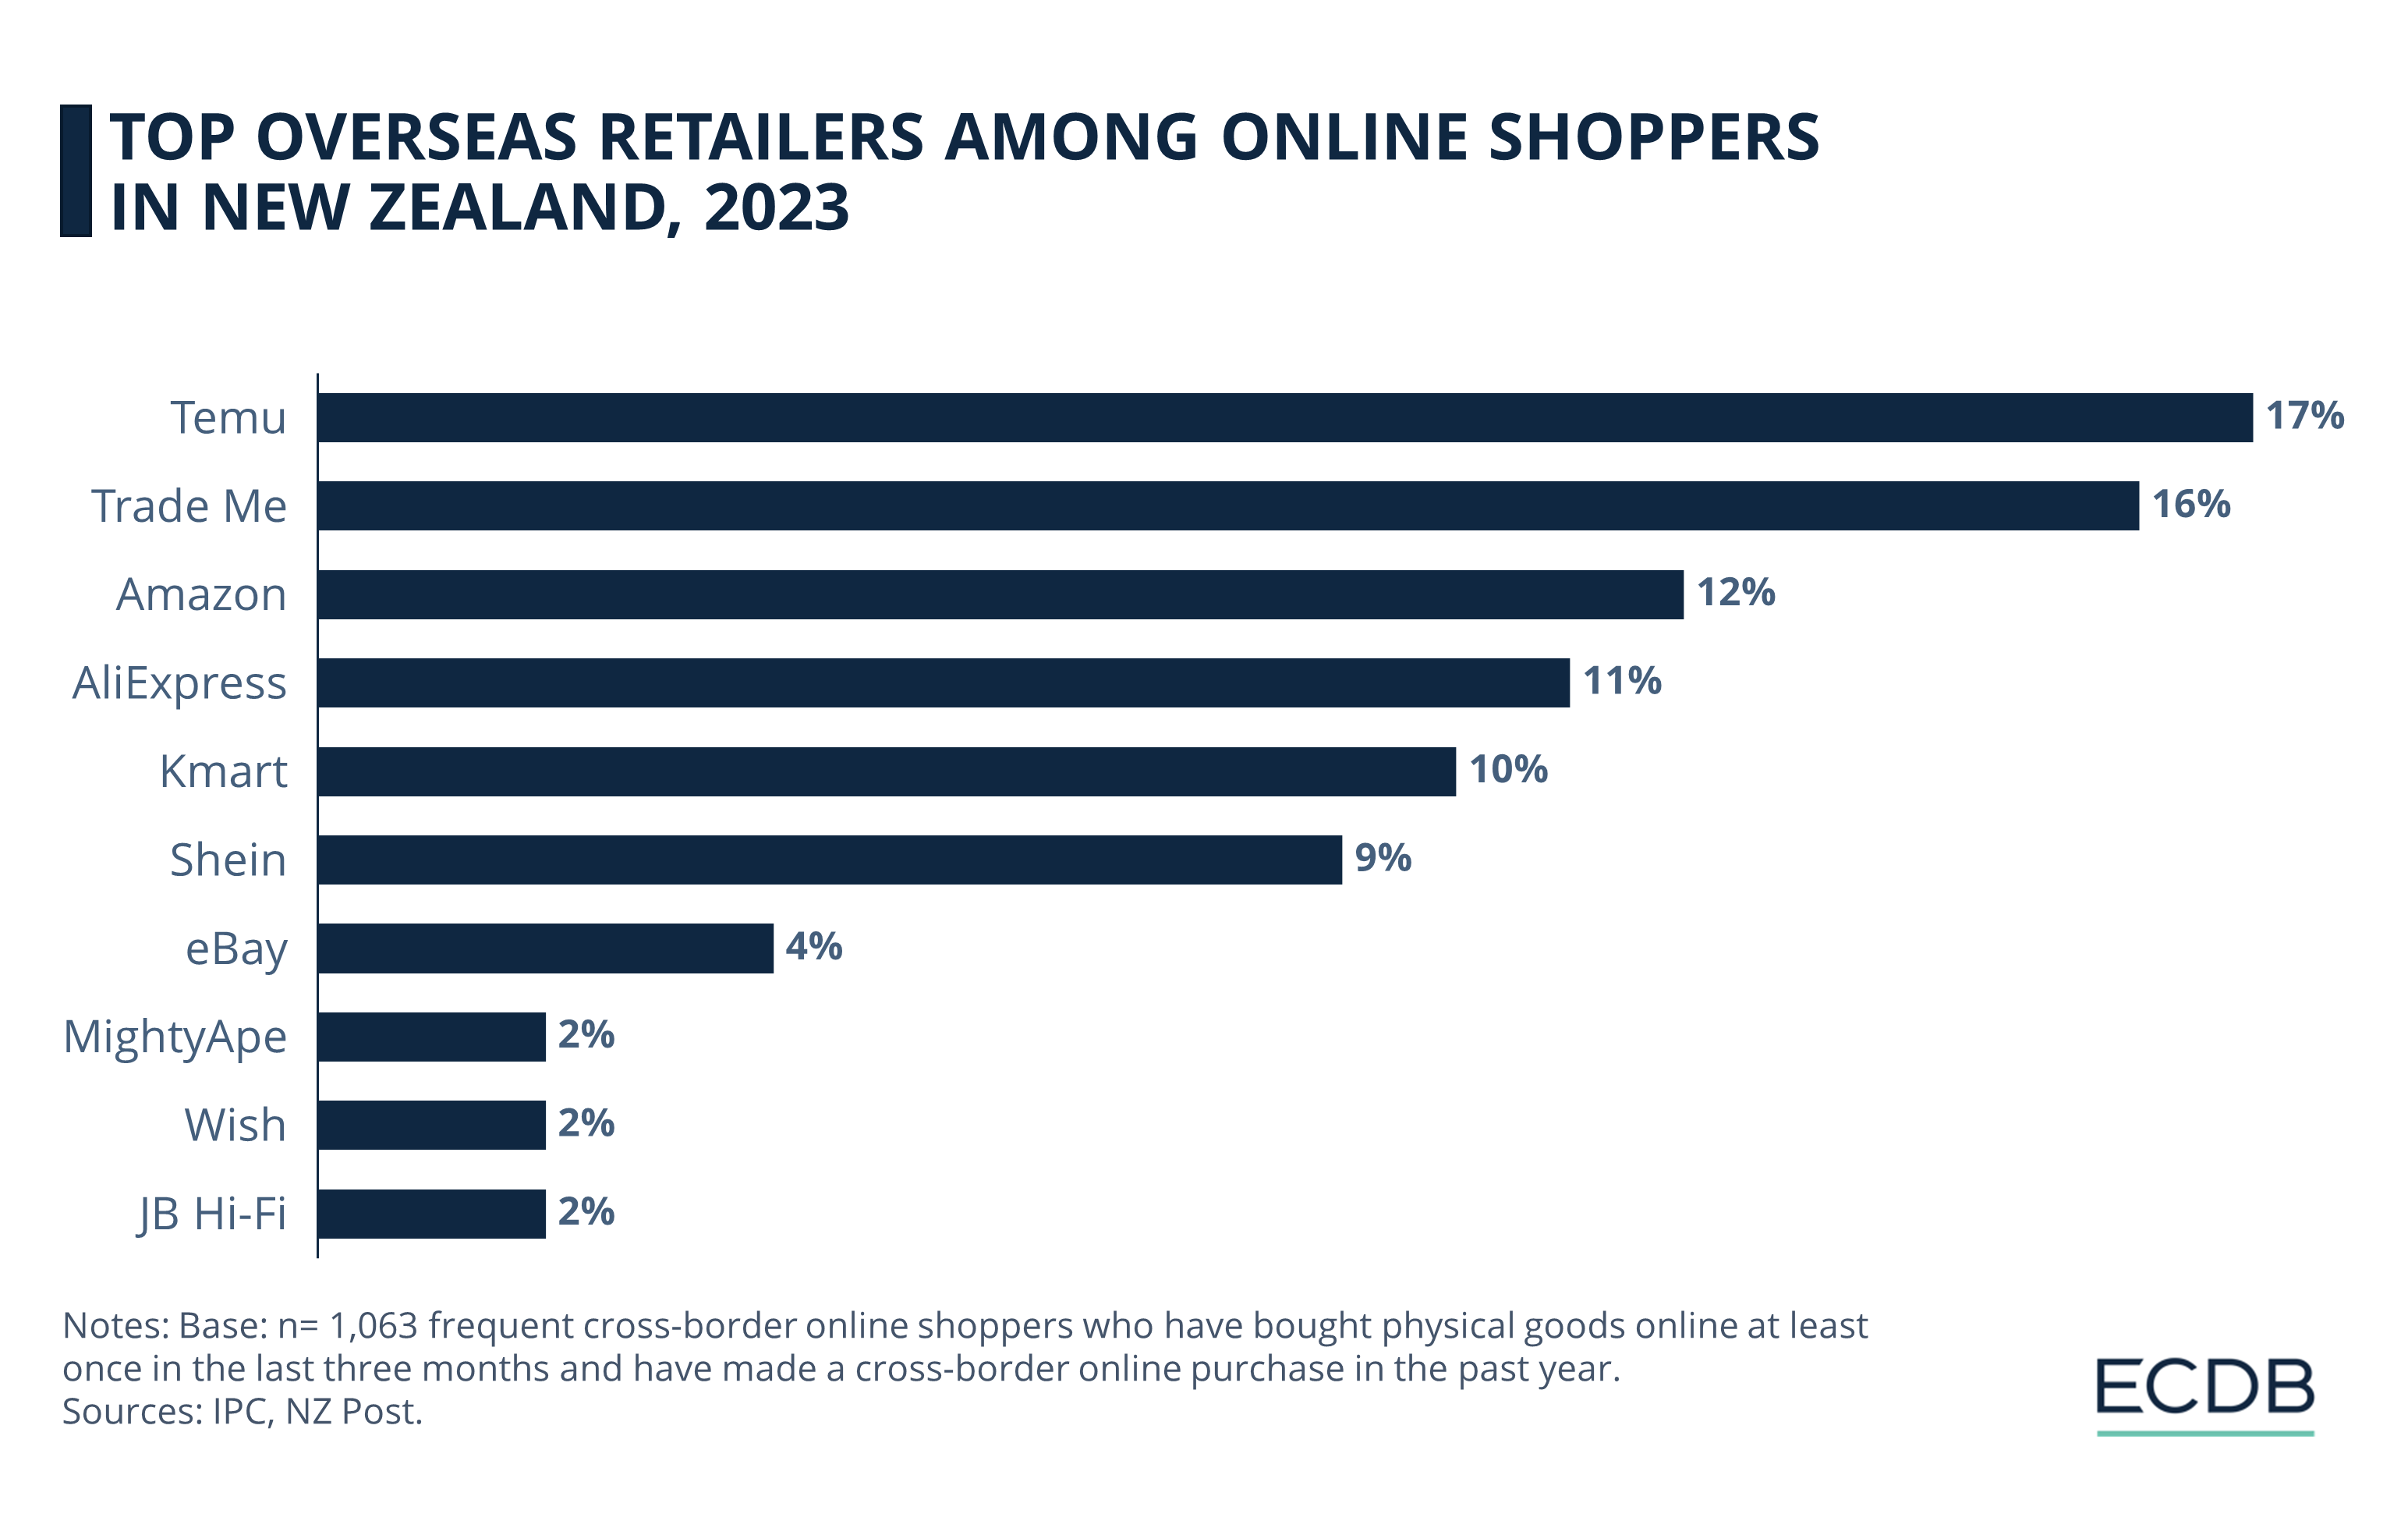 Top Overseas Retailers Among Online Shoppers in New Zealand, 2023